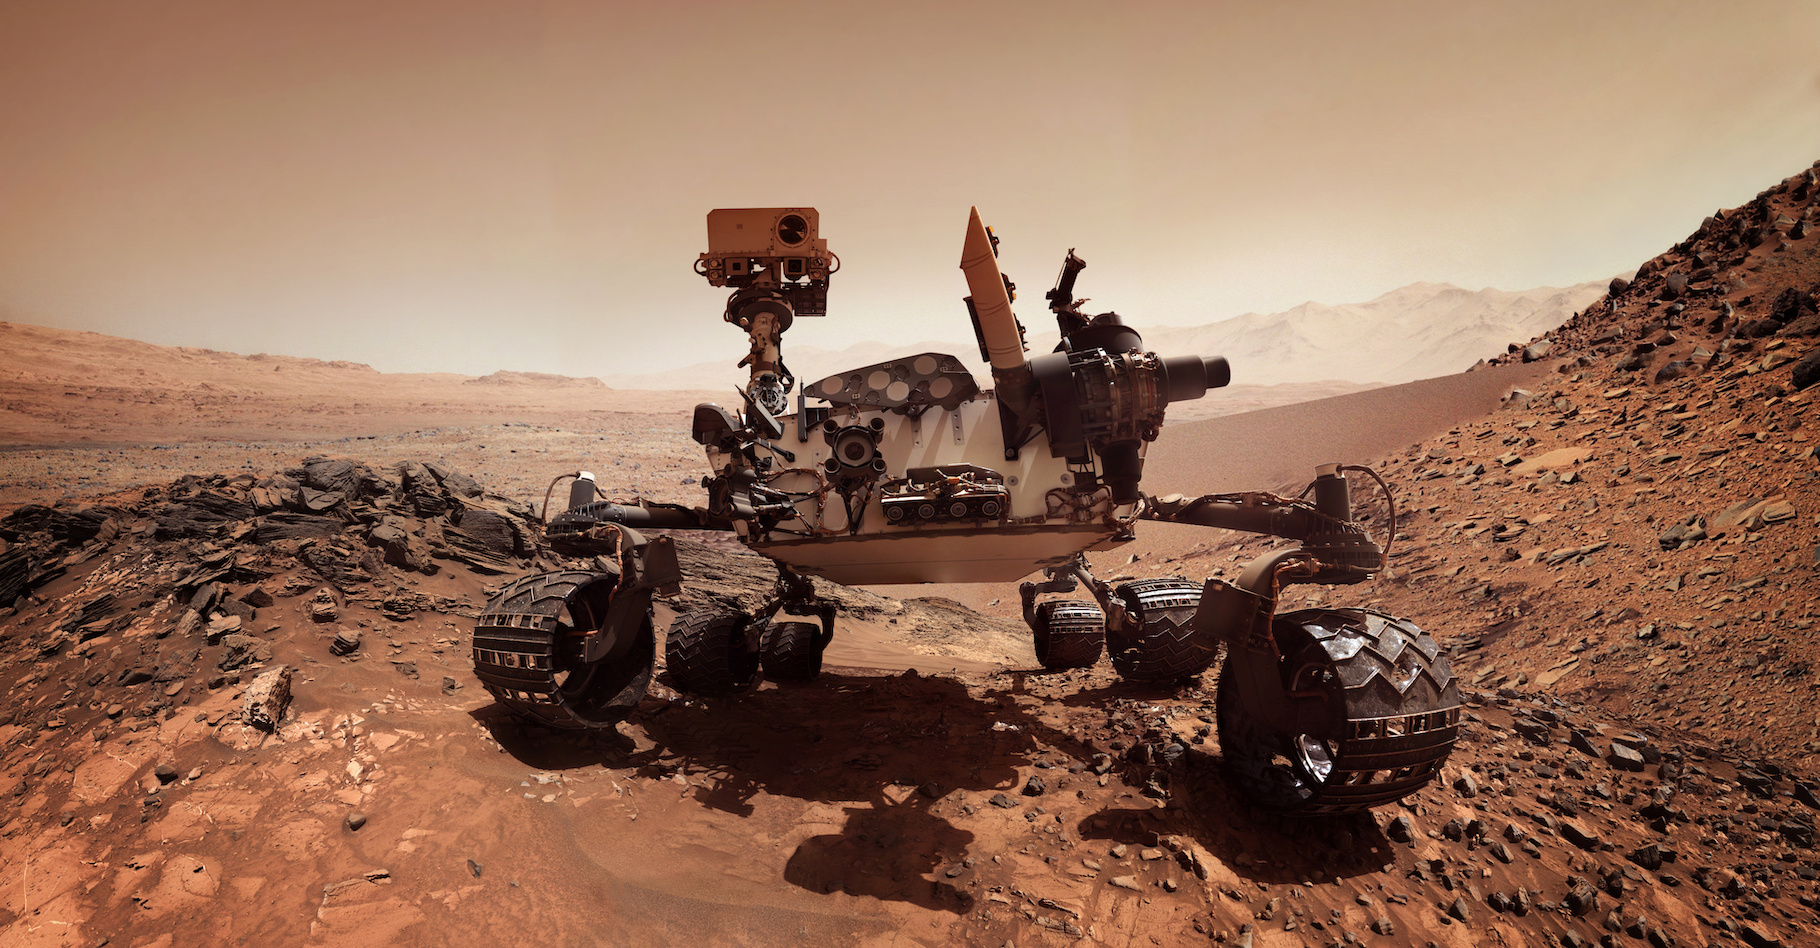 Depuis son arrivée sur Mars, le rover Perseverance recueille des informations qui pourraient mettre les chercheurs sur les traces de formes de vie extraterrestre. Il vient de mettre au jour des molécules organiques qui pourraient constituer de précieux indices. © Tryfonov, Adobe Stock